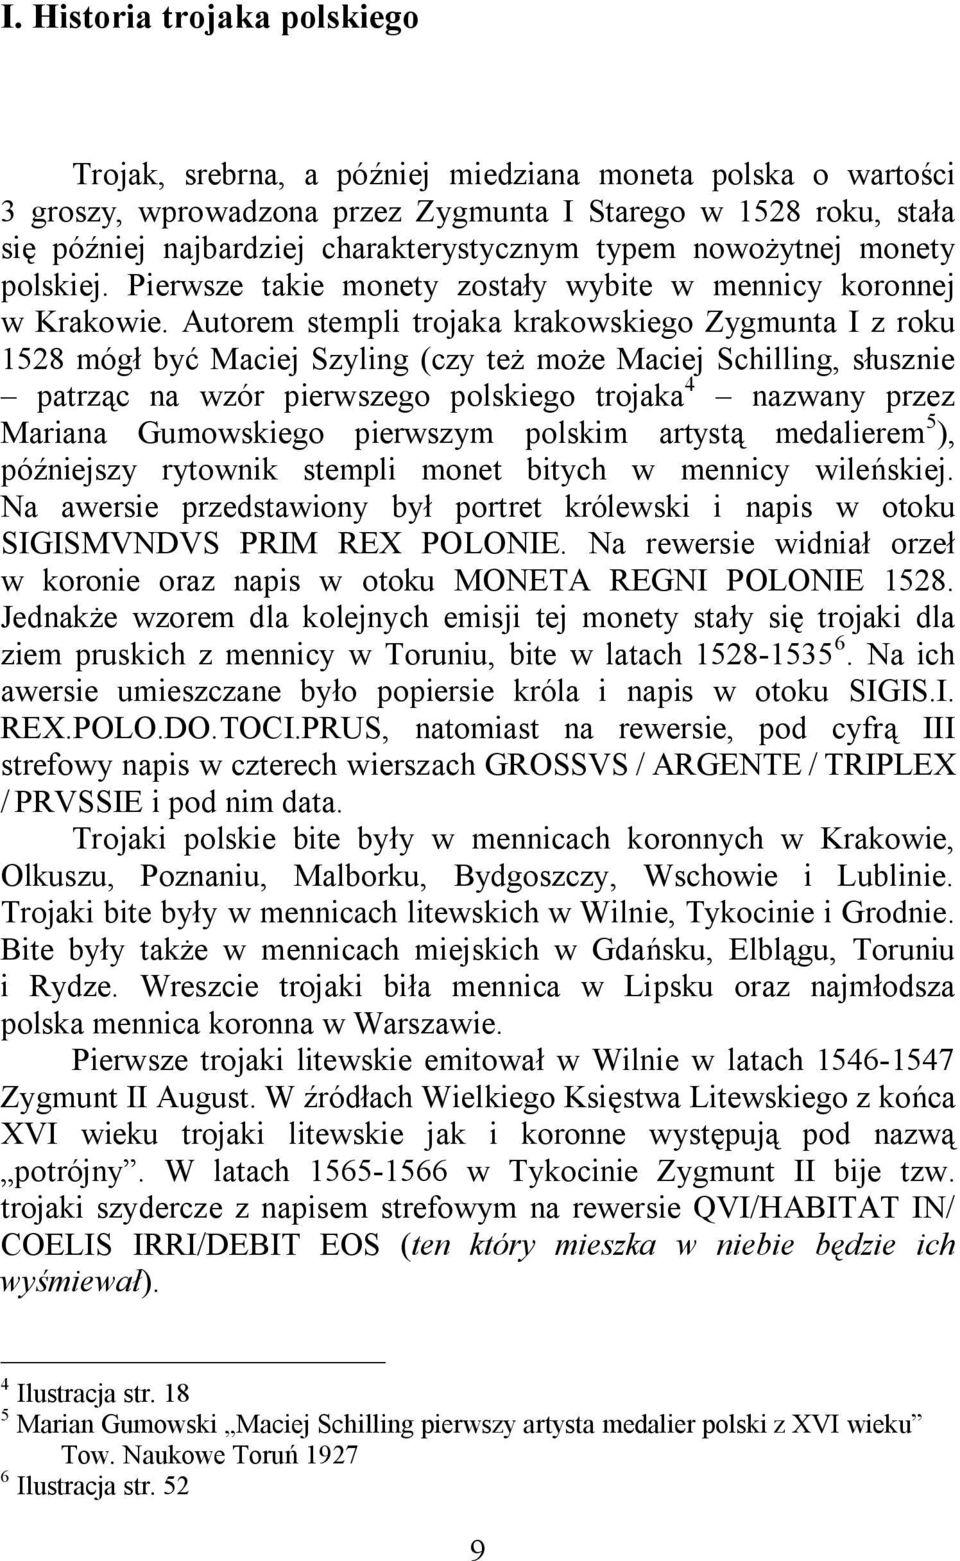 Autorem stempli trojaka krakowskiego Zygmunta I z roku 1528 mógł być Maciej Szyling (czy też może Maciej Schilling, słusznie patrząc na wzór pierwszego polskiego trojaka 4 nazwany przez Mariana